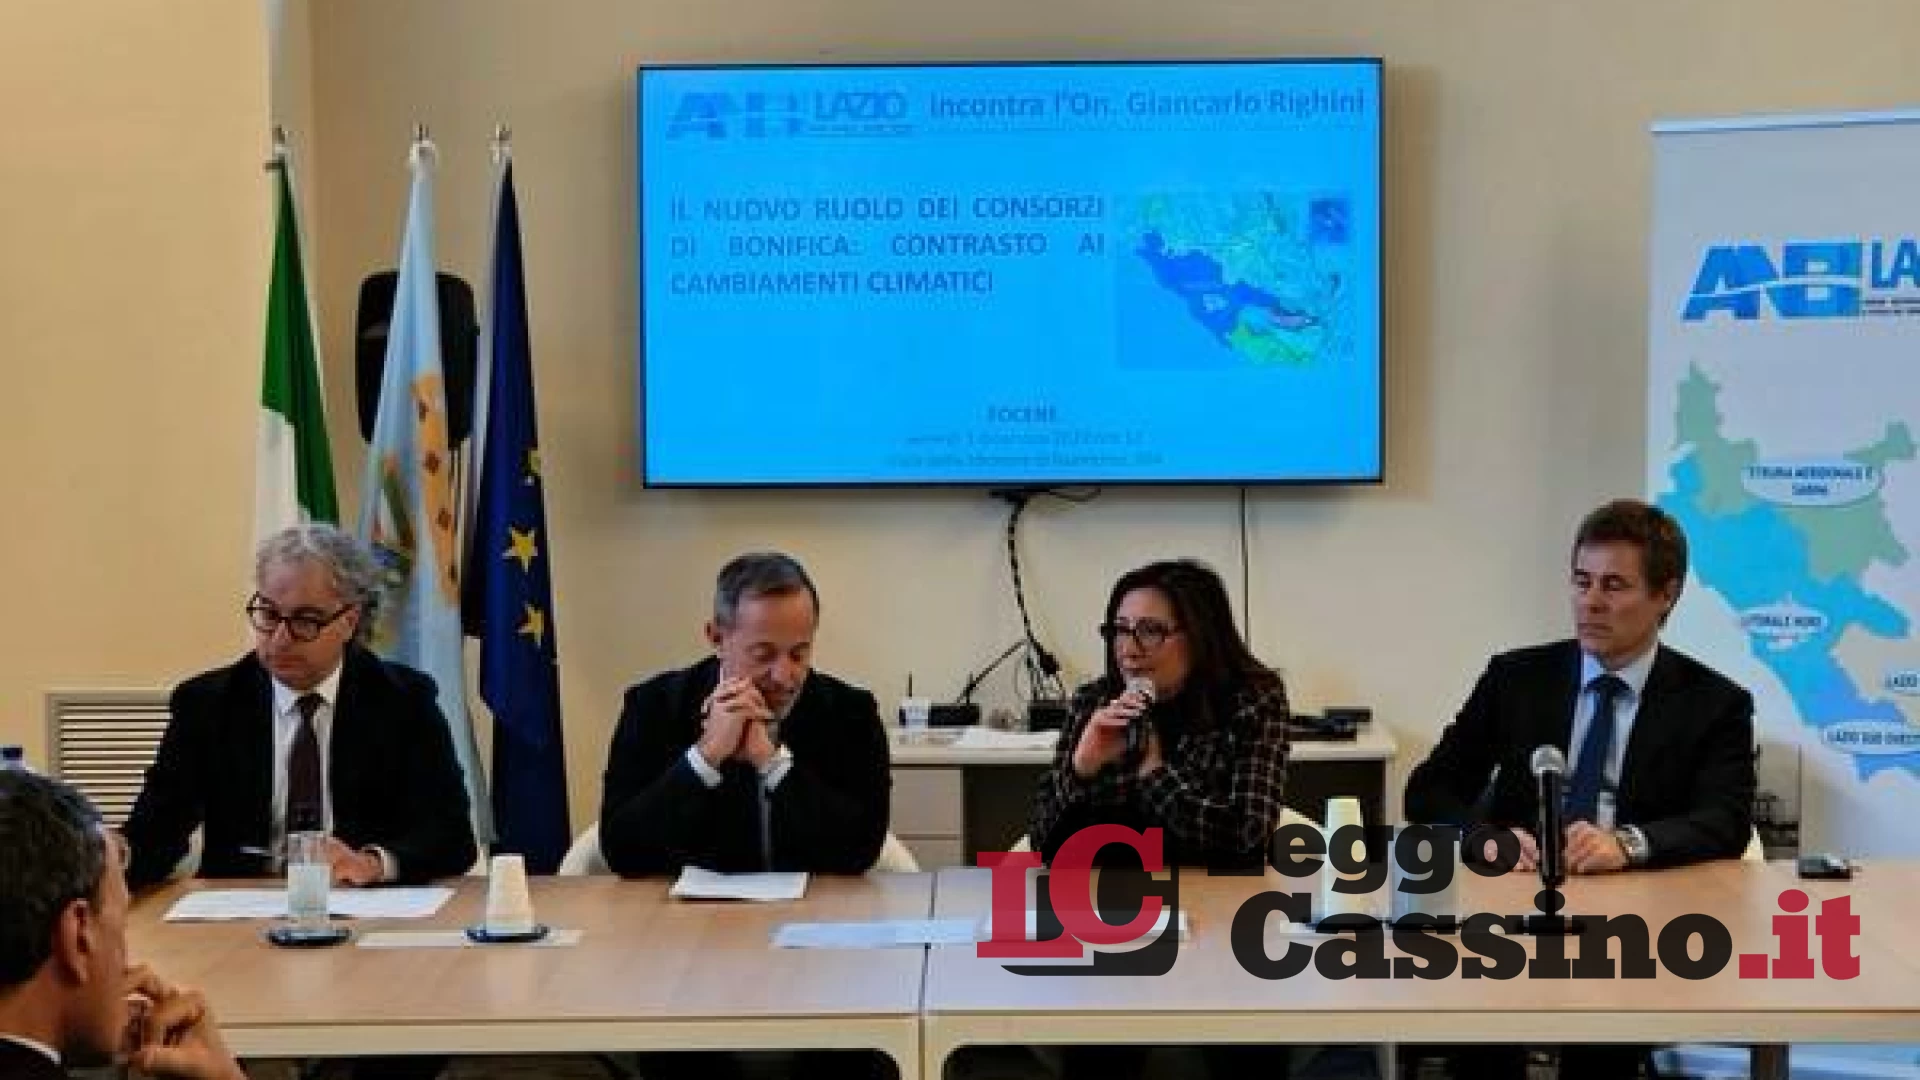 L'Assessore Righini presente al Cda di Anbi Lazio “Occorre un nuovo corso per i Consorzi di Bonifica”